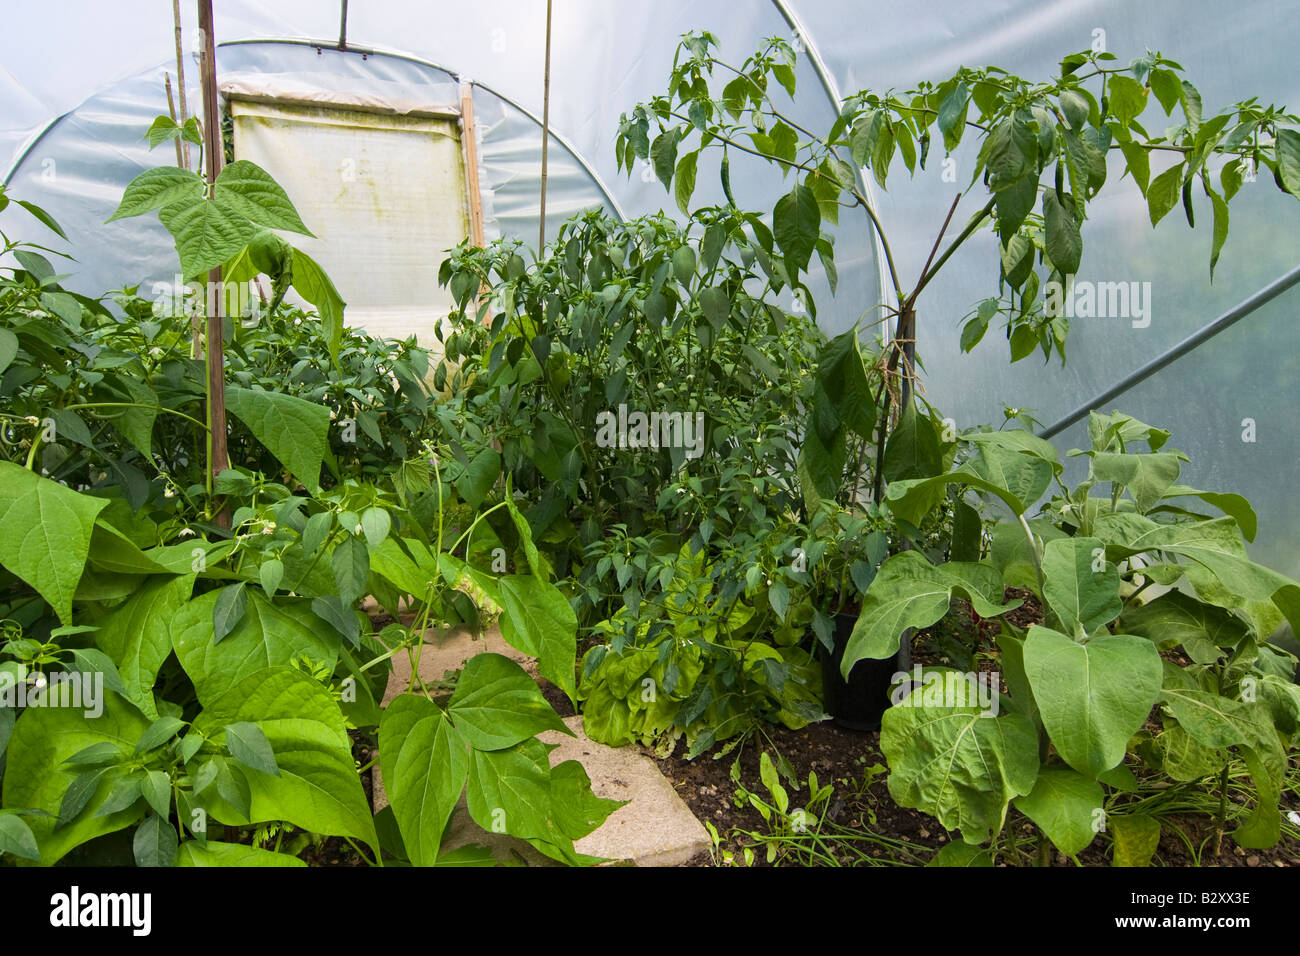 Chili, Pfeffer, Aubergine & Salat wächst in einem kleinen Garten Folientunnel, Kent. Stockfoto